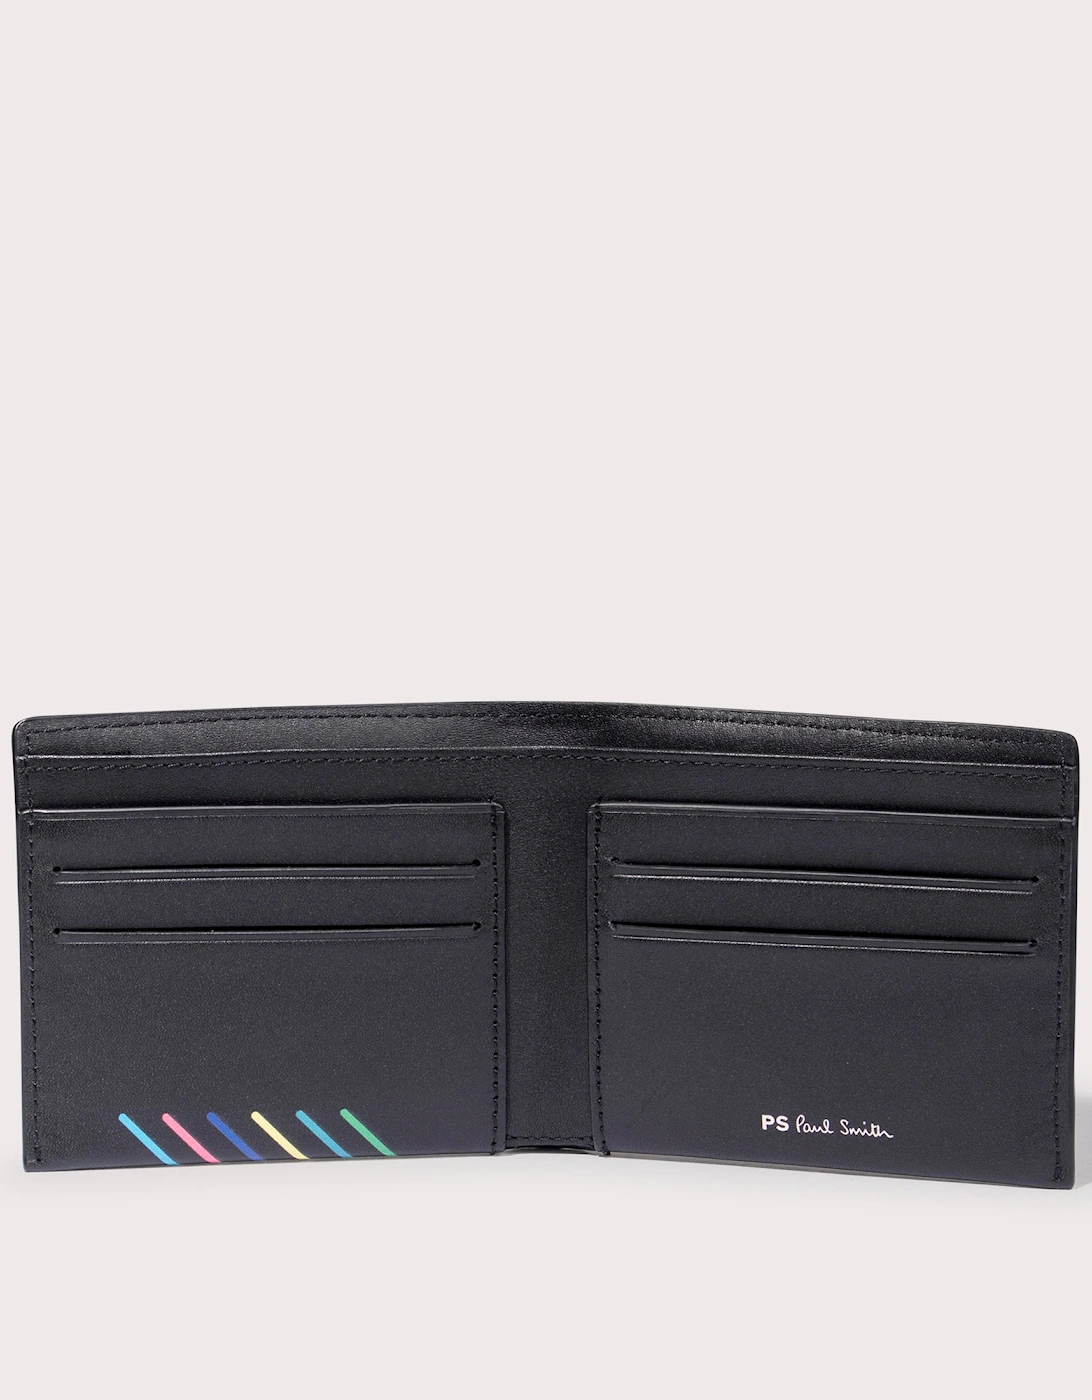 Leather 'Sports Stripe' Billfold Wallet